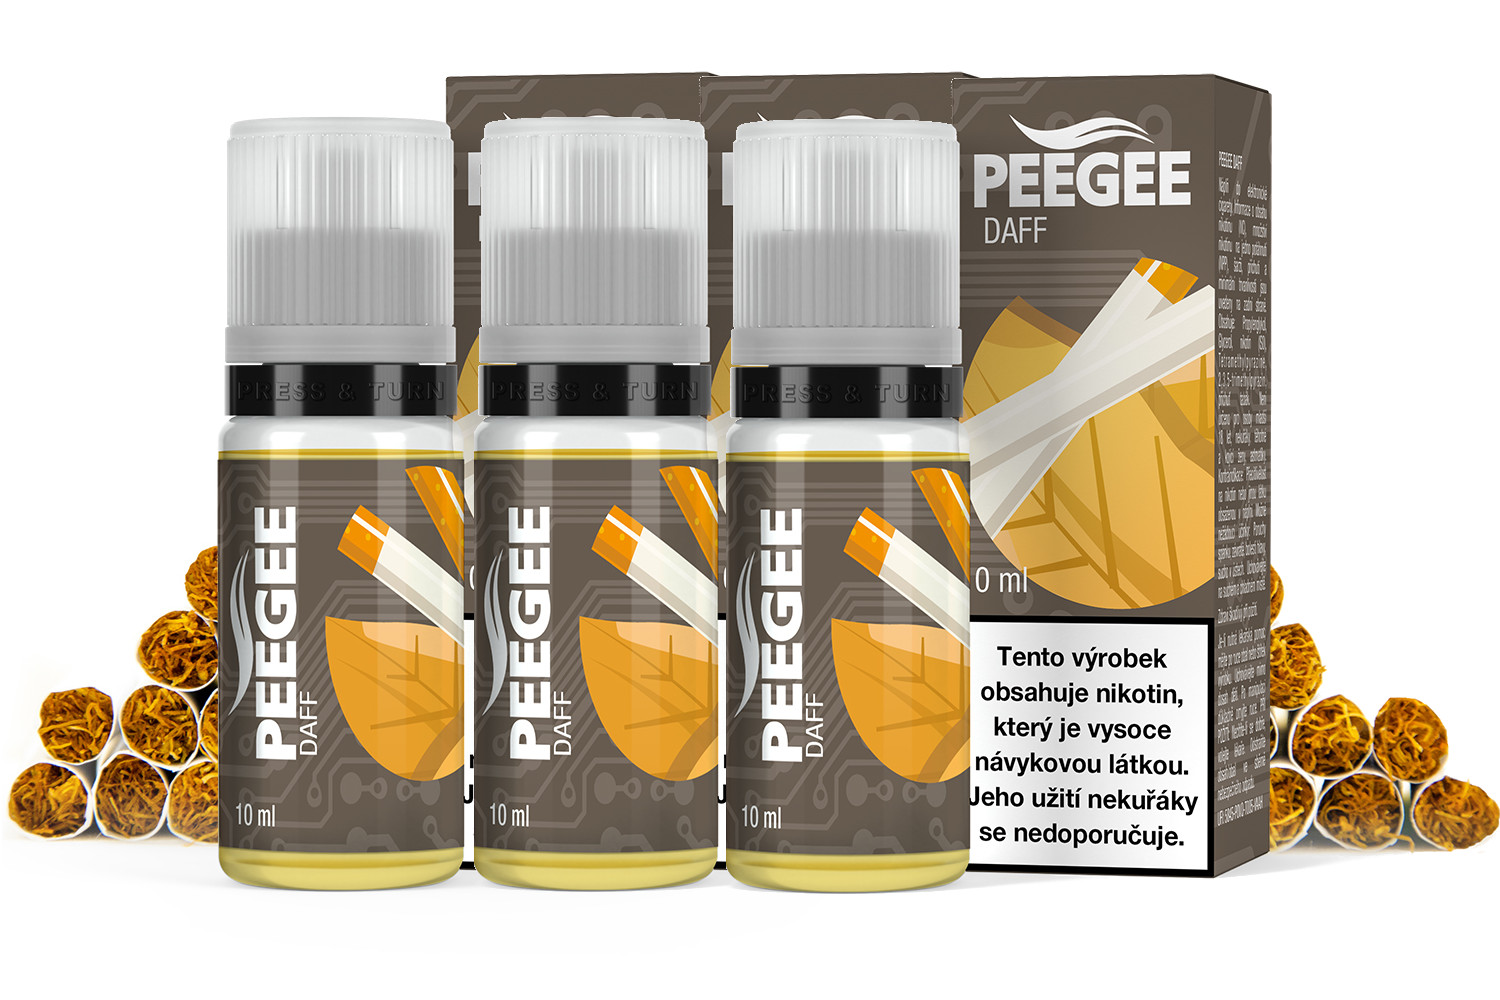 PEEGEE - DAFF 3x10ml Obsah nikotinu: 6mg